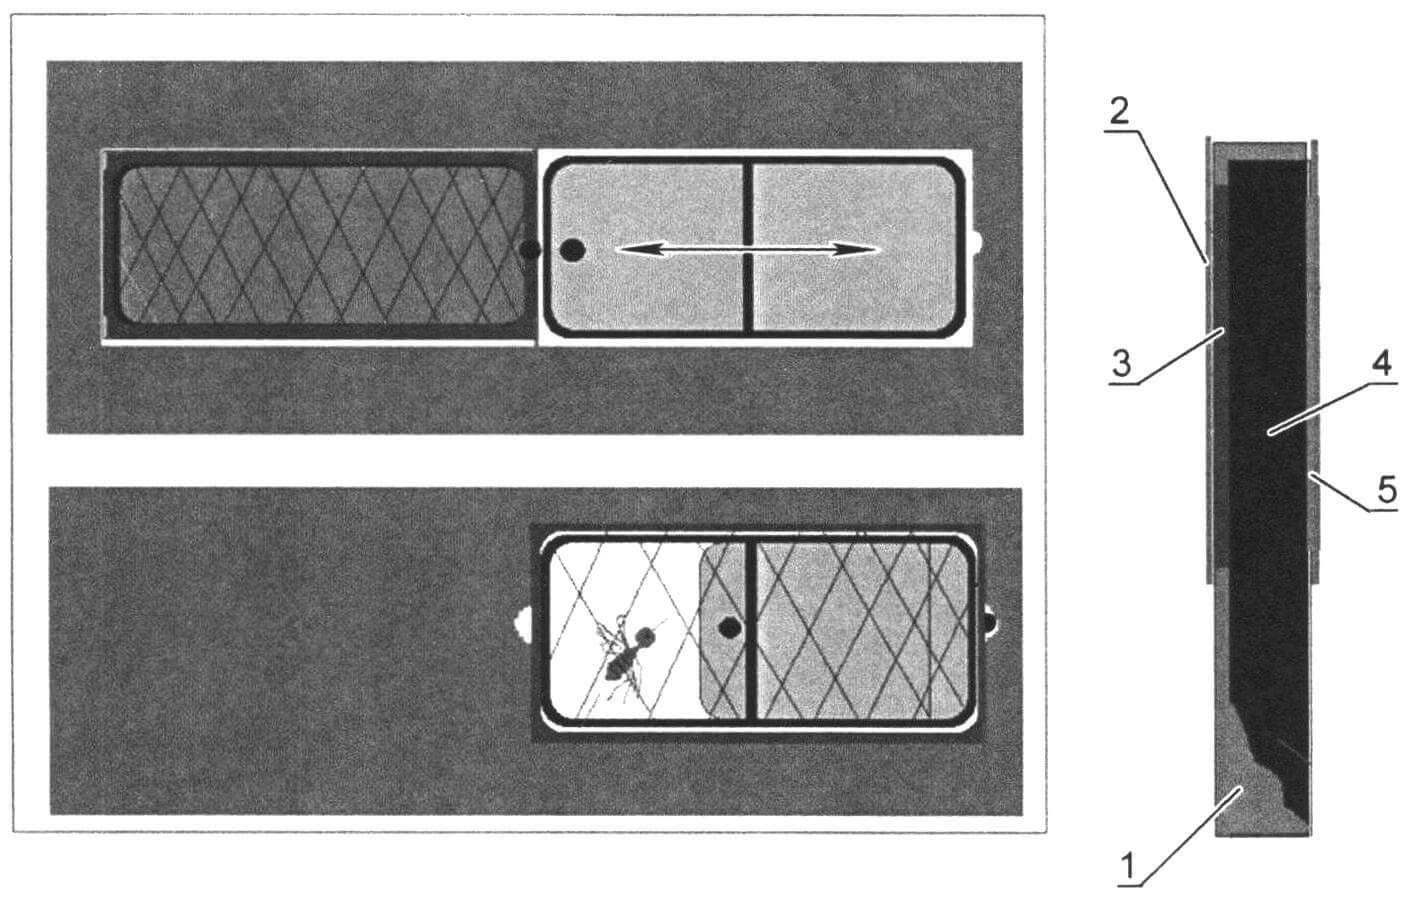 «Фишка» прицепа - москитные сетки, убирающиеся внутрь стен: 1 - пеноплэкс; 2 - внутренняя обшивка; 3 - рамка с москитной сеткой; 4 - каркас; 5 - окно